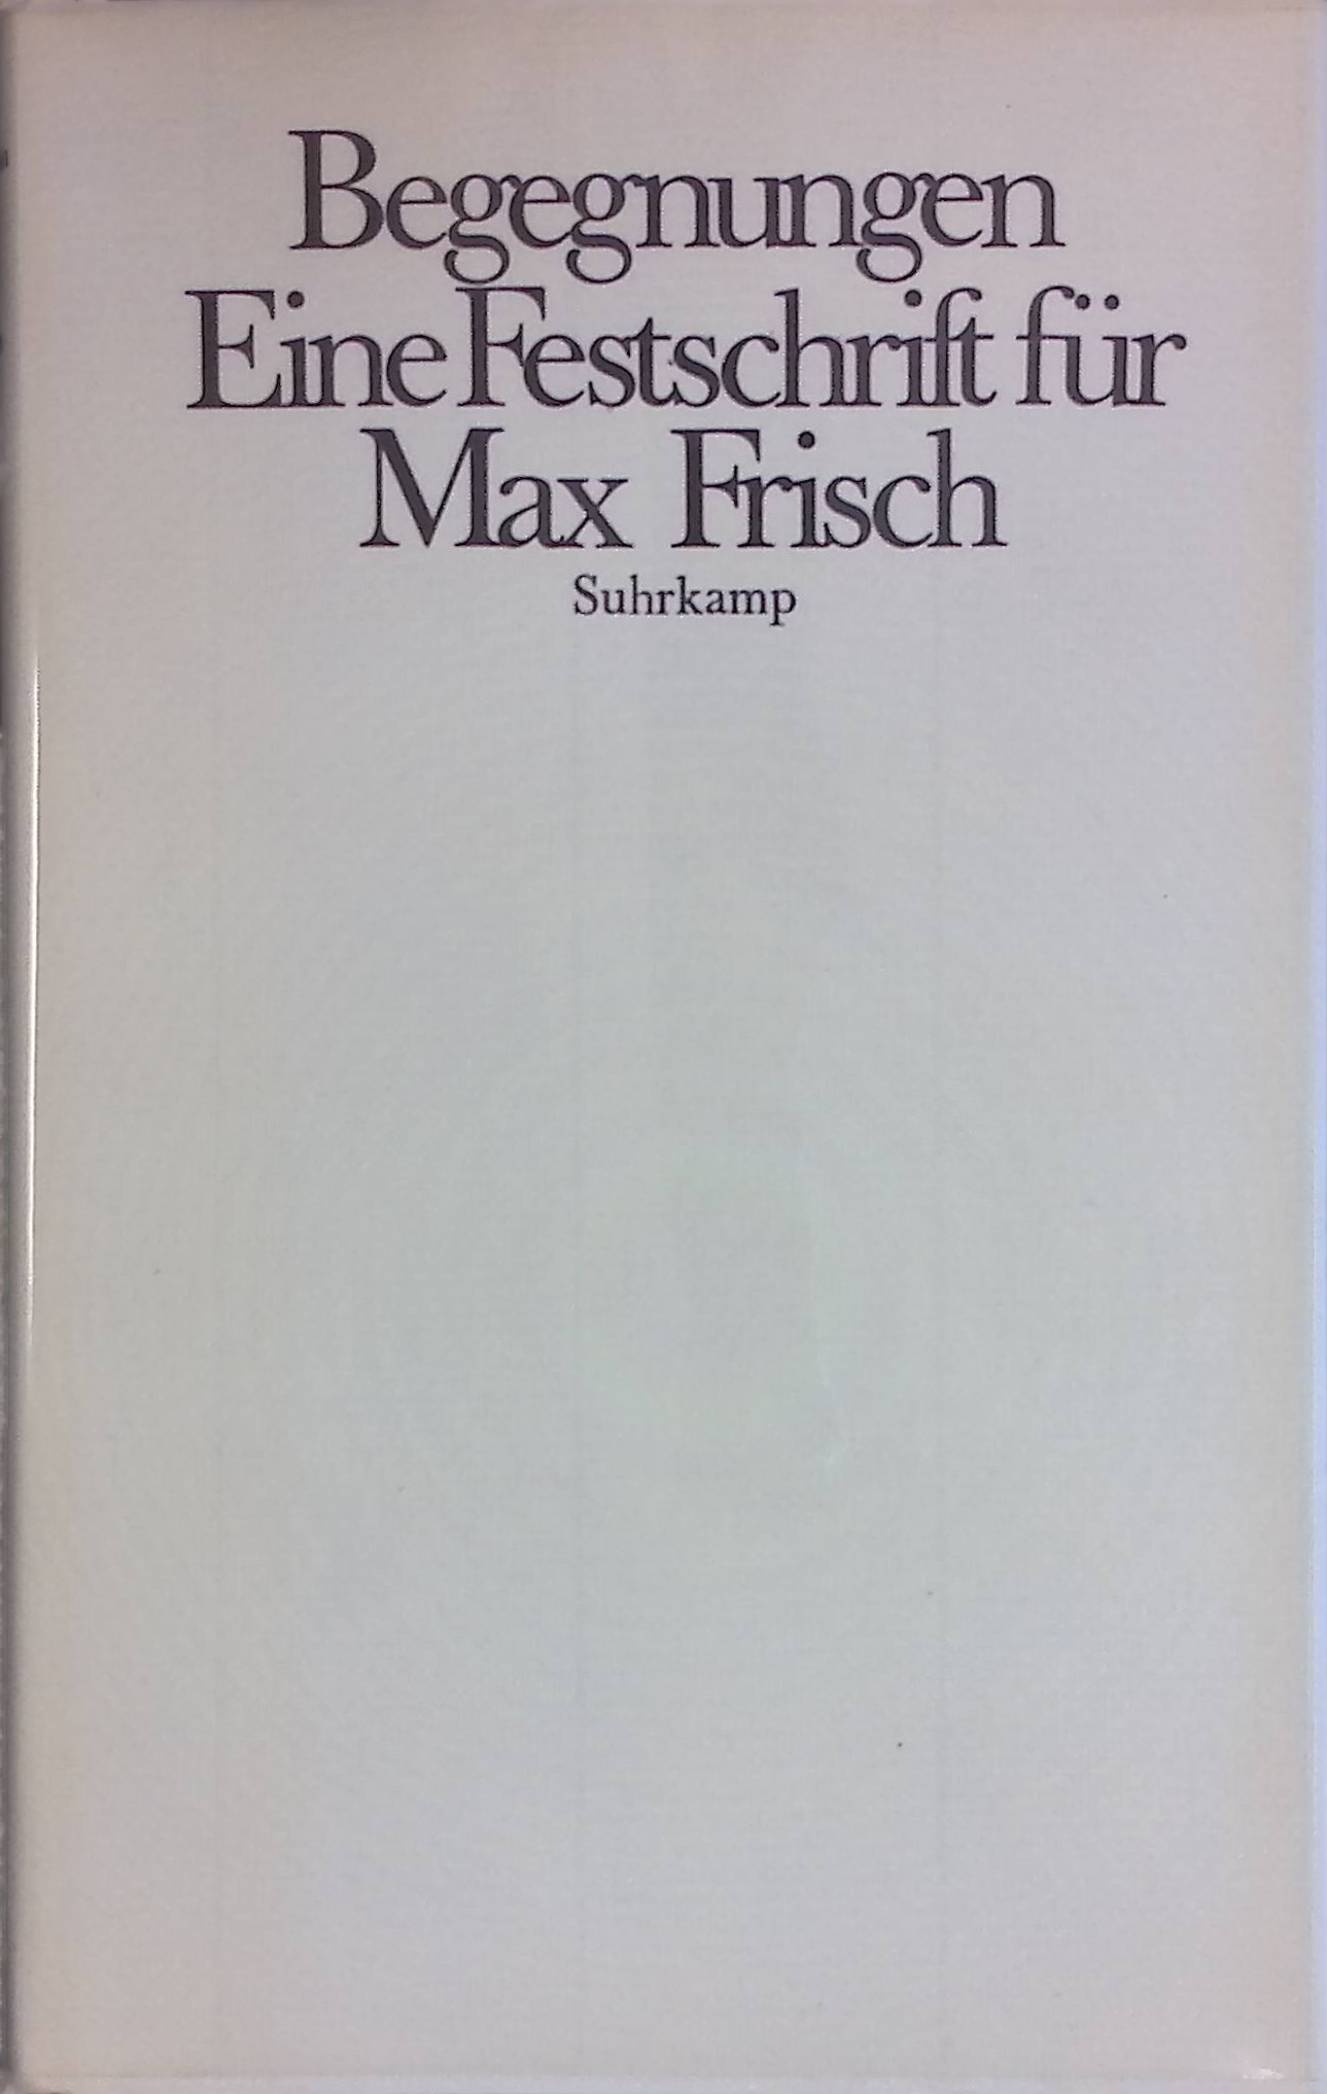 Der Weg wird immer steiler. Hier bitte: Mein Max Frisch -in: Begegnungen - Eine Festschr. für Max Frisch zum 70. Geburtstag - Becker, Jürgen, Peter Bichsel Silvio Blatter u. a.